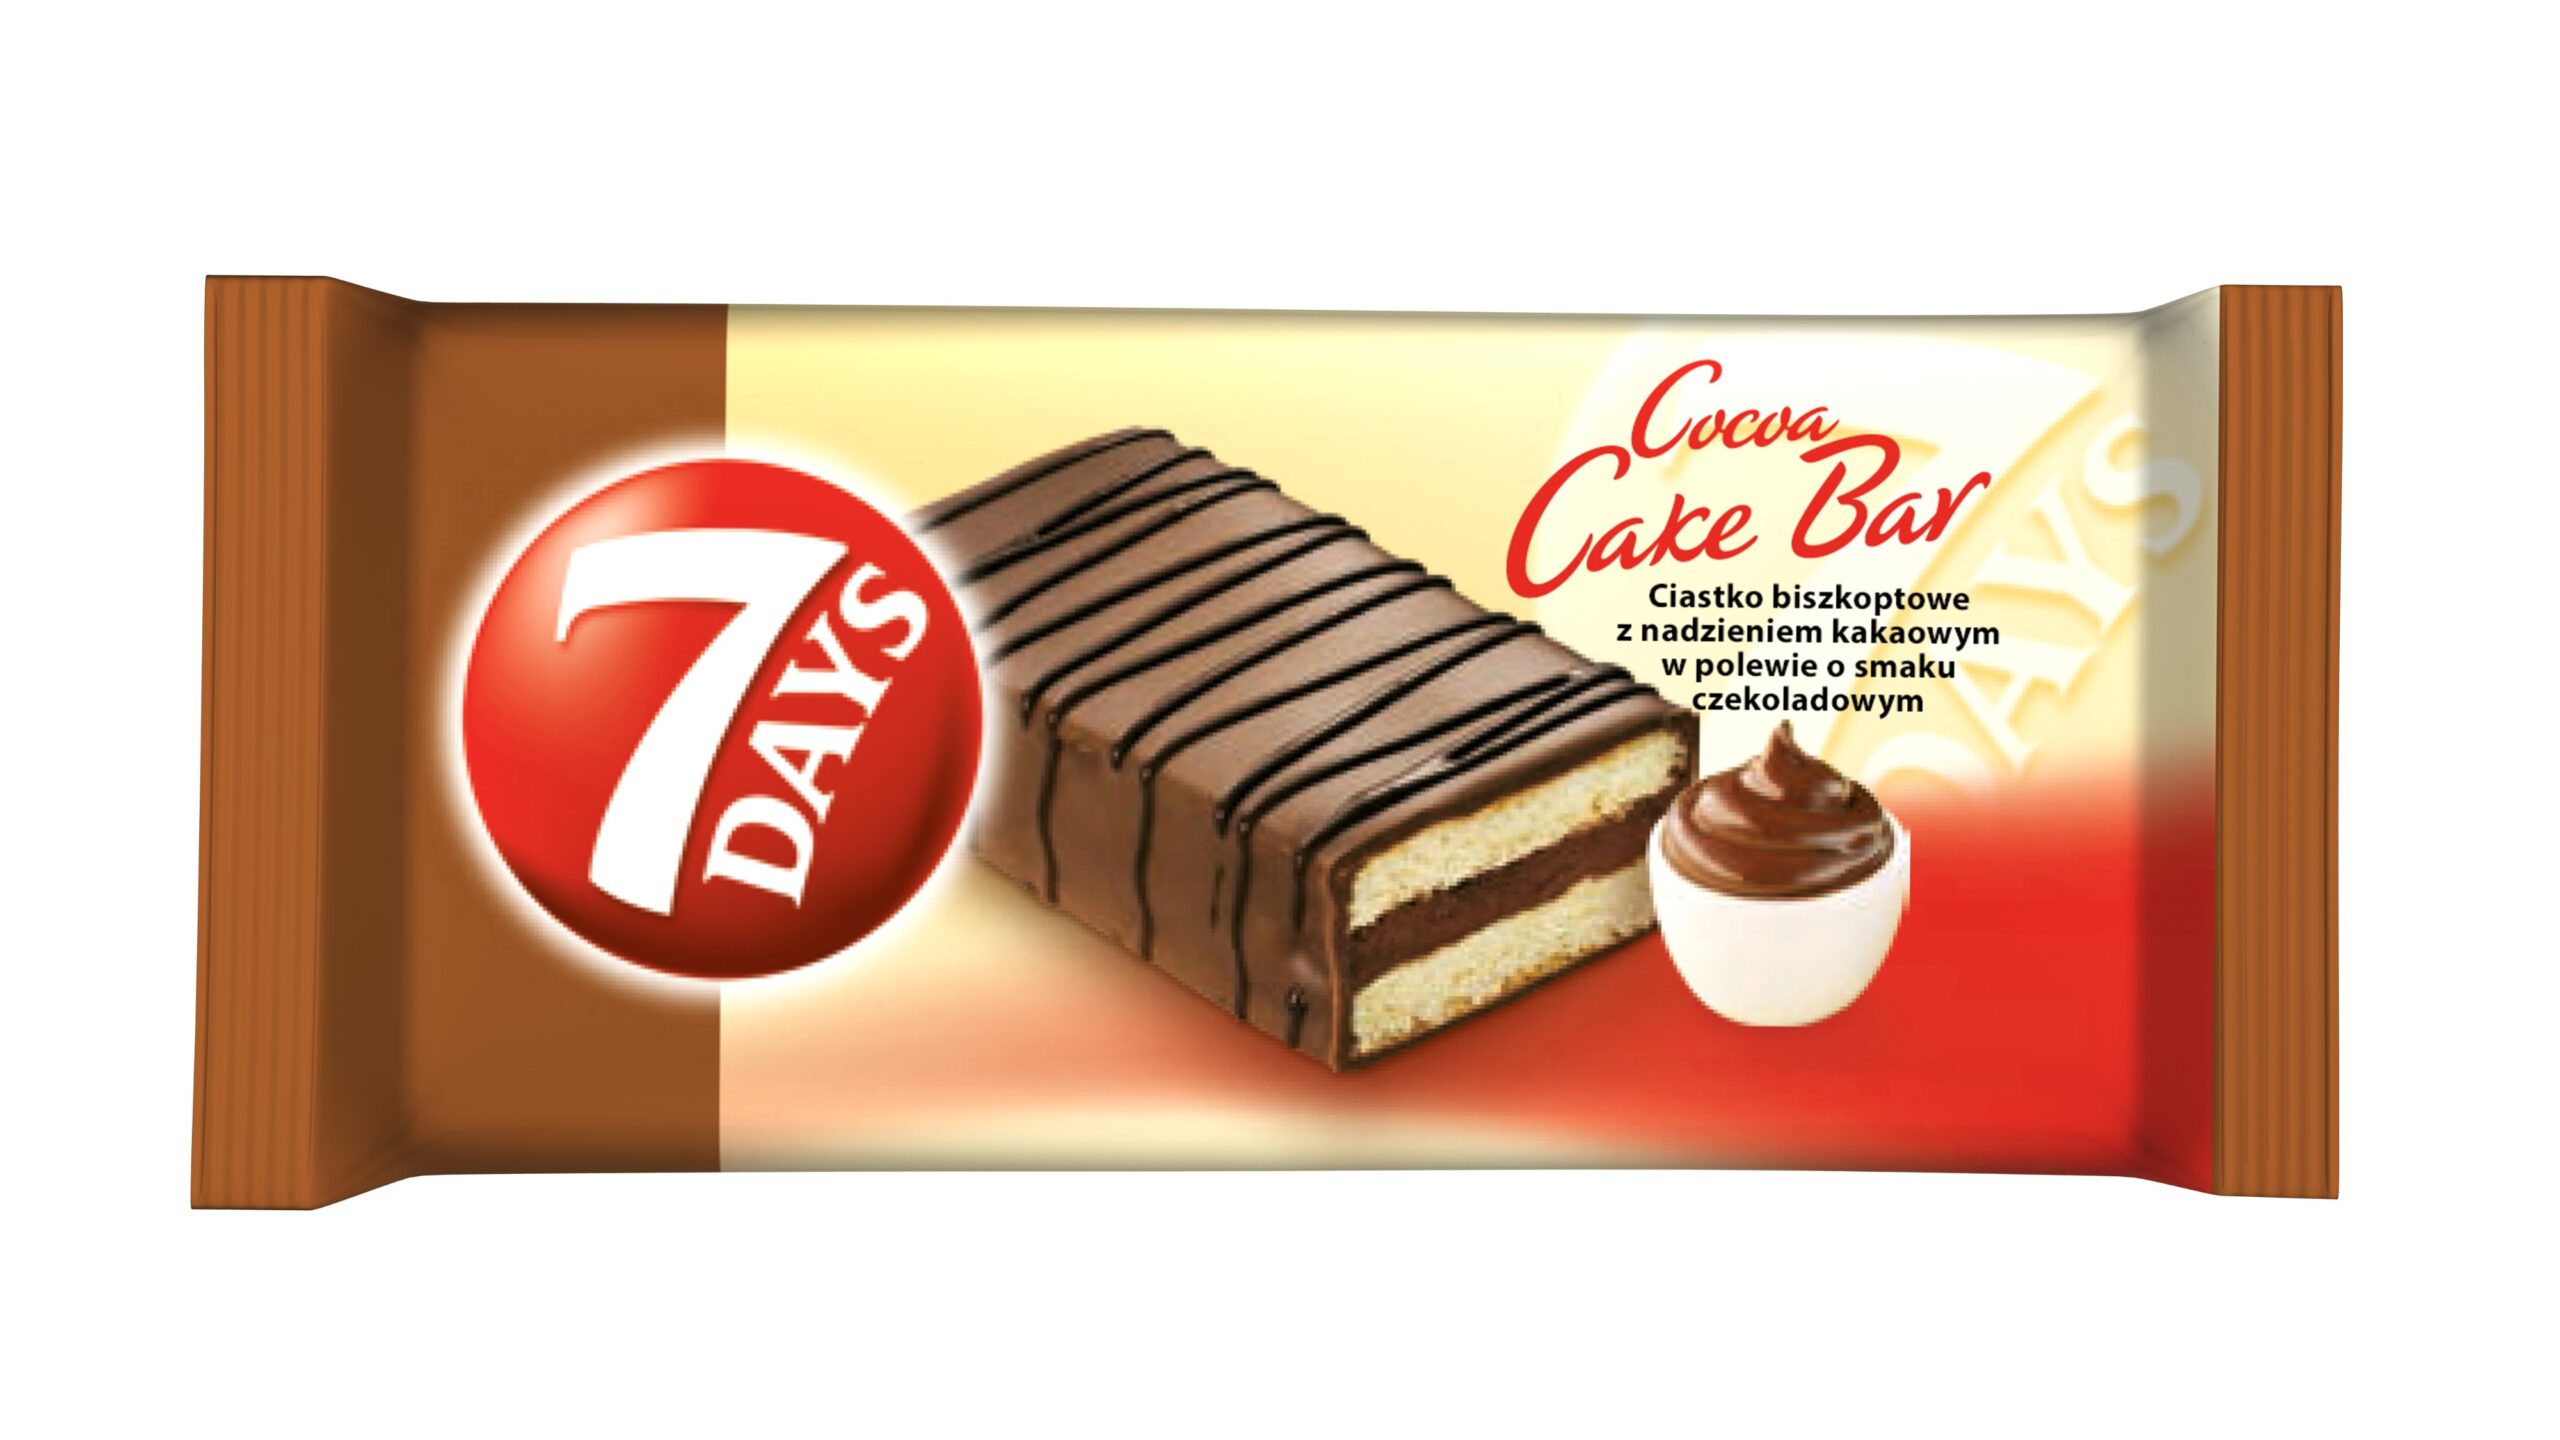 8 Days Cake Bar 25gm